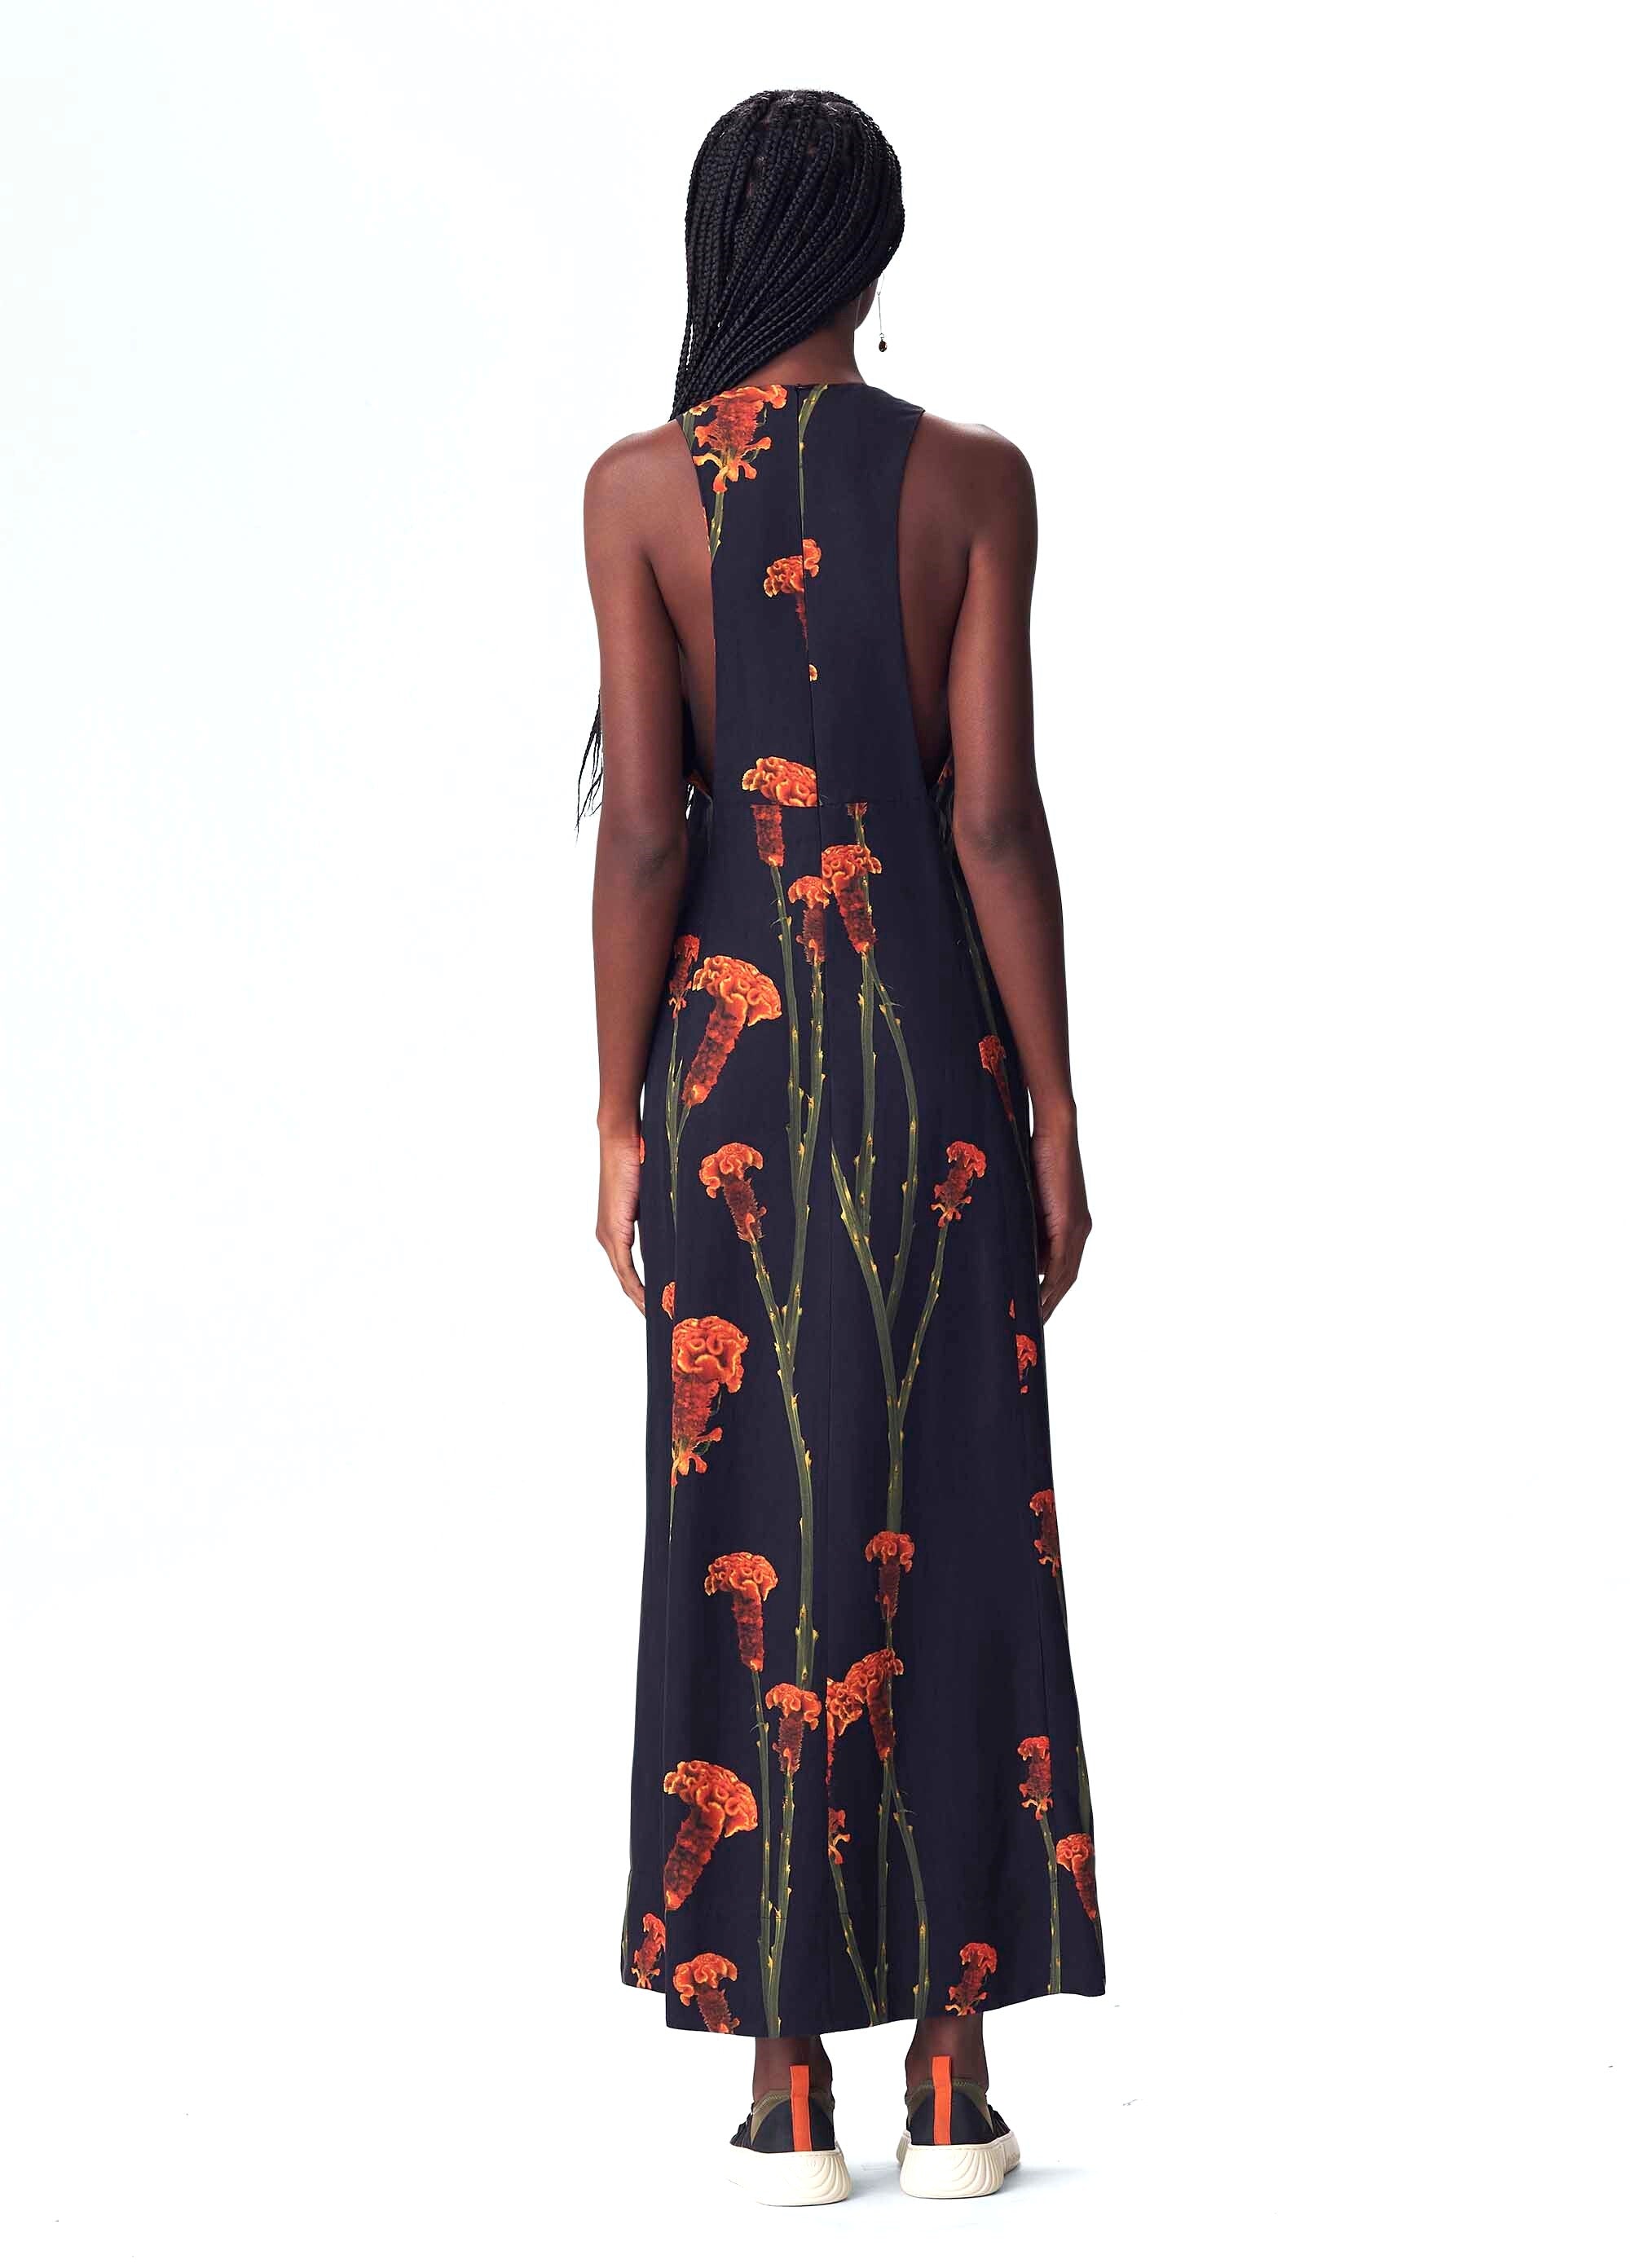 Osklen Brazil - Marigold Dress